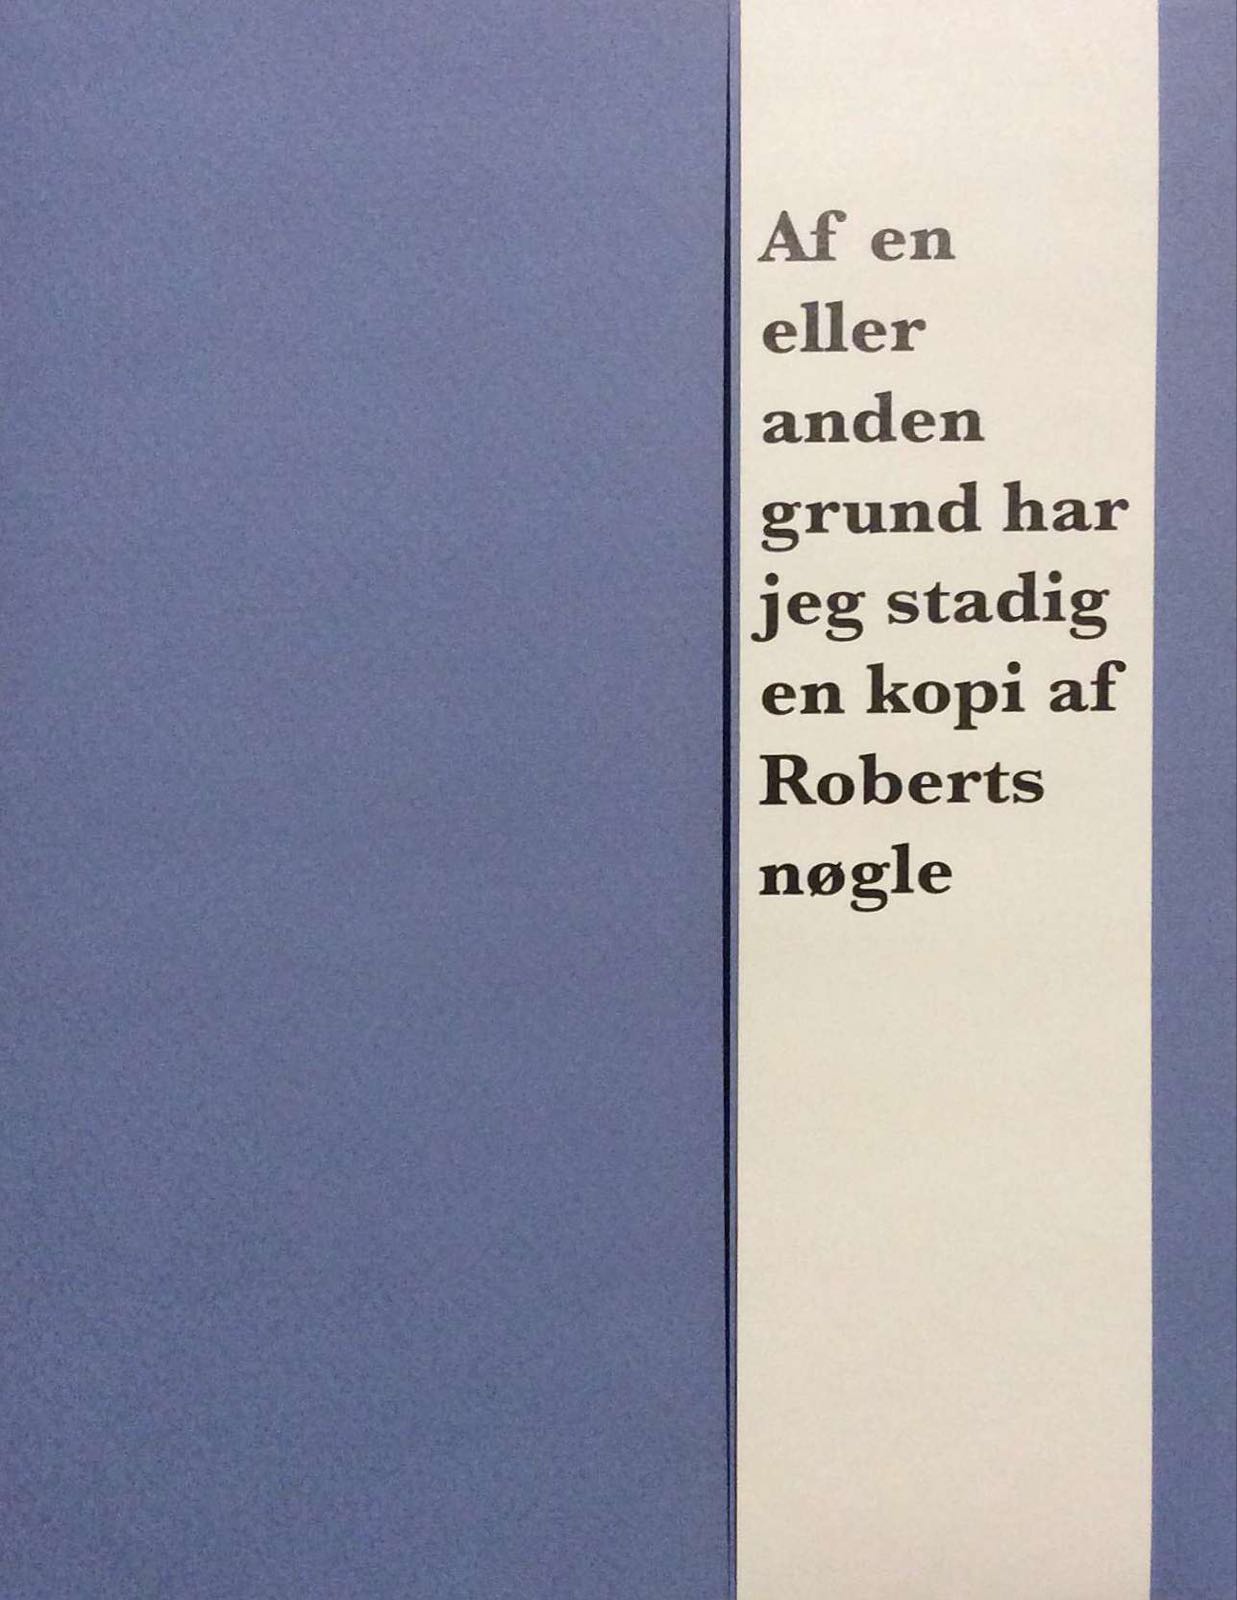 Danmarks Forsogsmuseum. Den blå bog